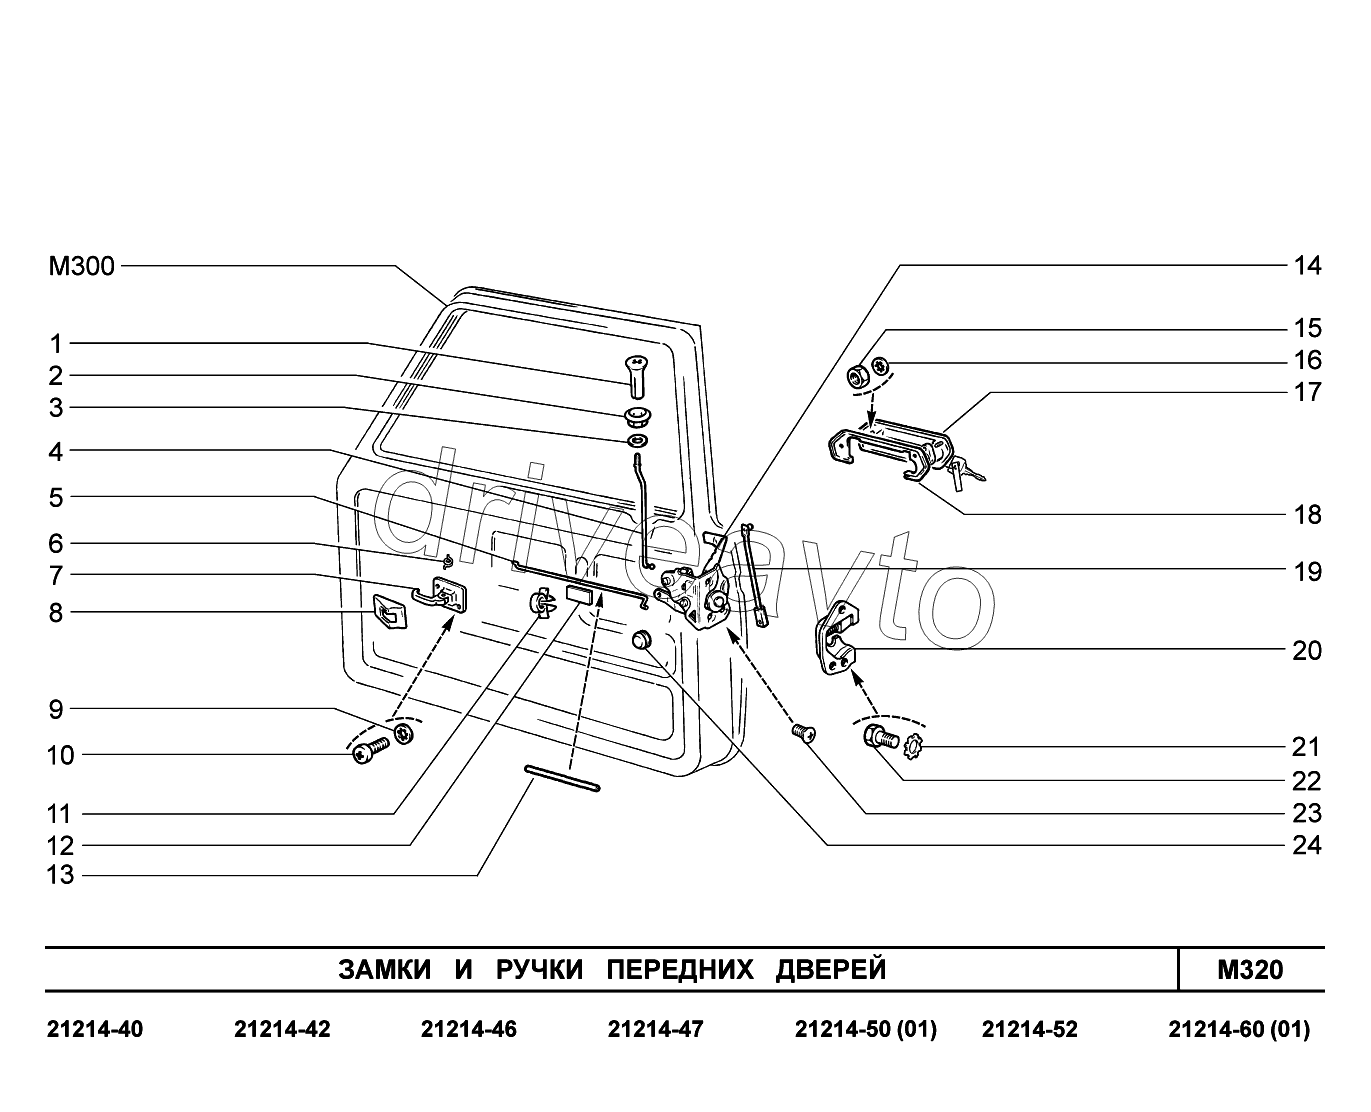 M320. Замки и ручки передних дверей